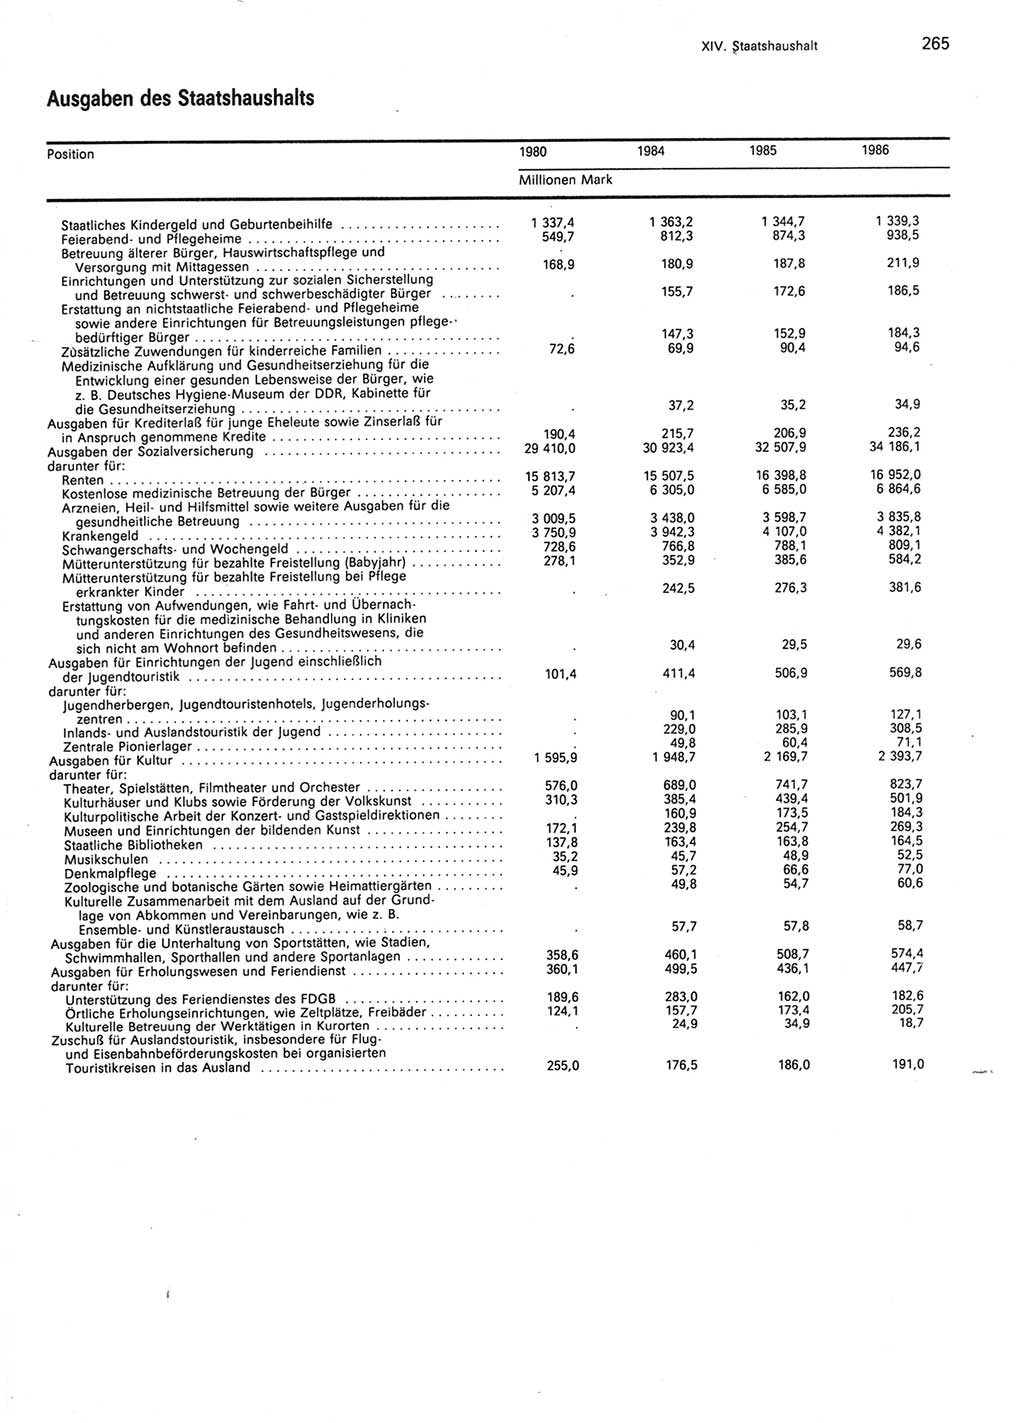 Statistisches Jahrbuch der Deutschen Demokratischen Republik (DDR) 1987, Seite 265 (Stat. Jb. DDR 1987, S. 265)